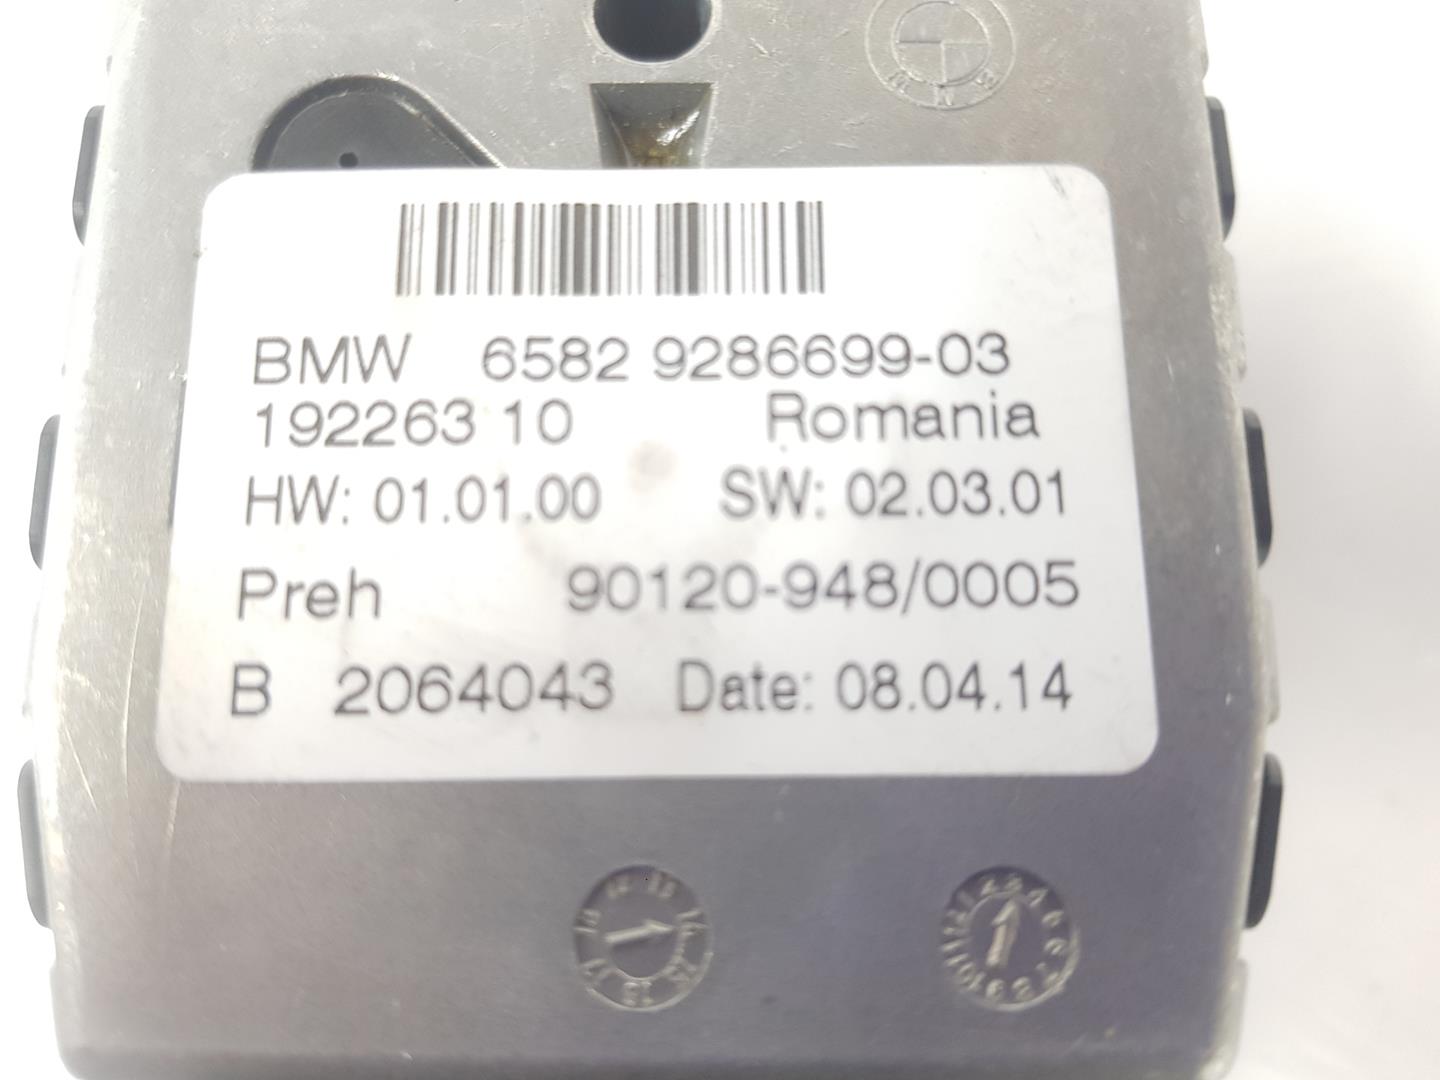 BMW X4 F26 (2014-2018) Navigacijos valdymo ratukas 65829286699, 65829286699 19828036